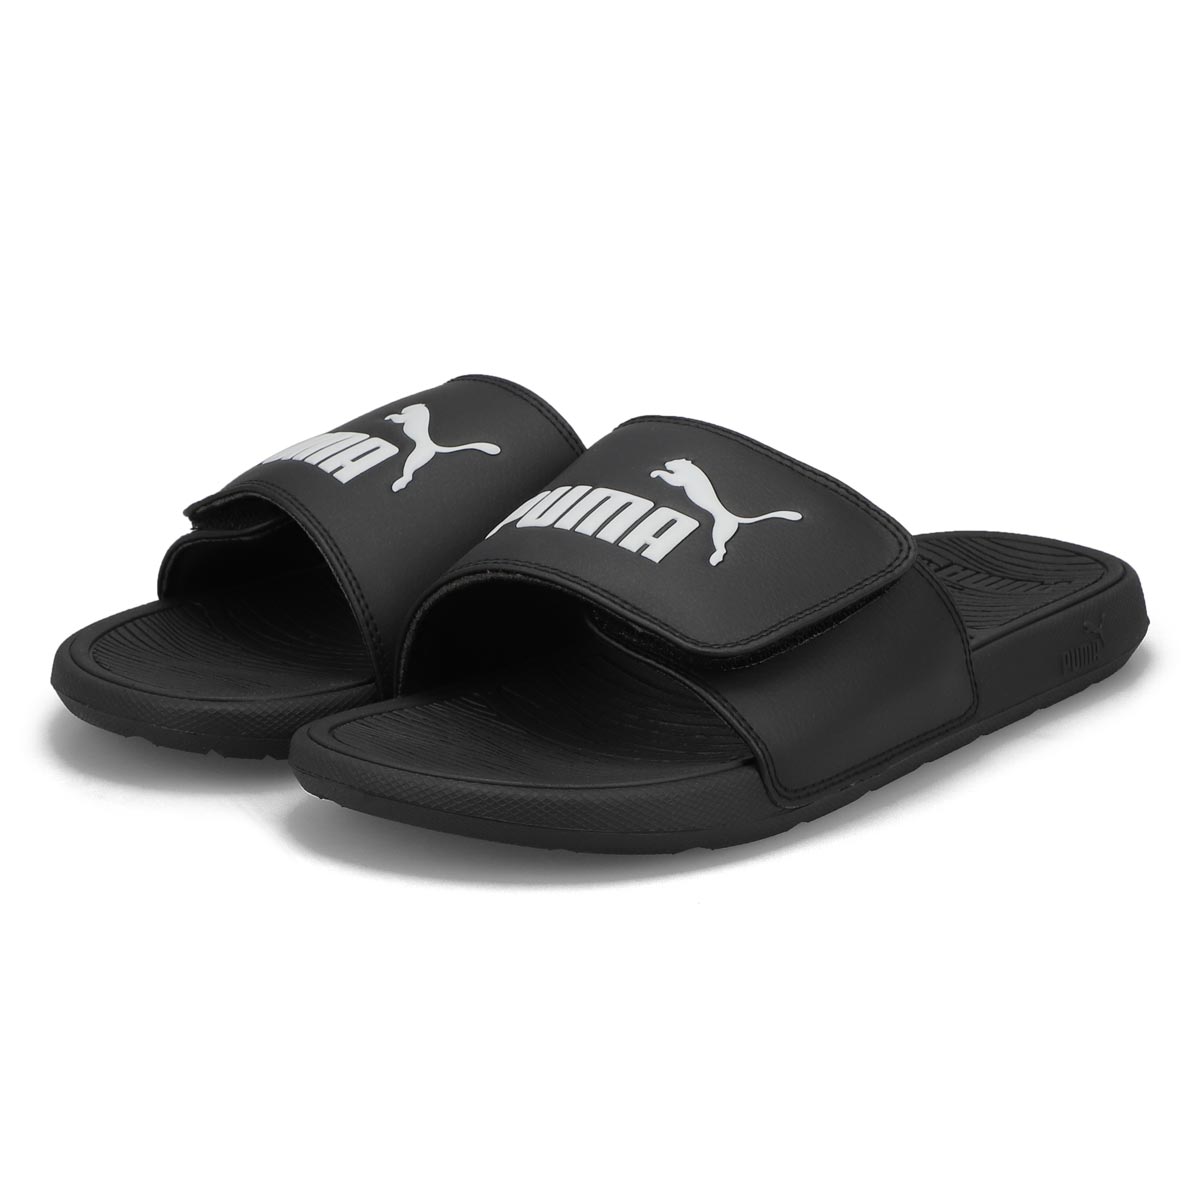 Men's Cool Cat 2.0 V BX Slide Sandal - Black/White